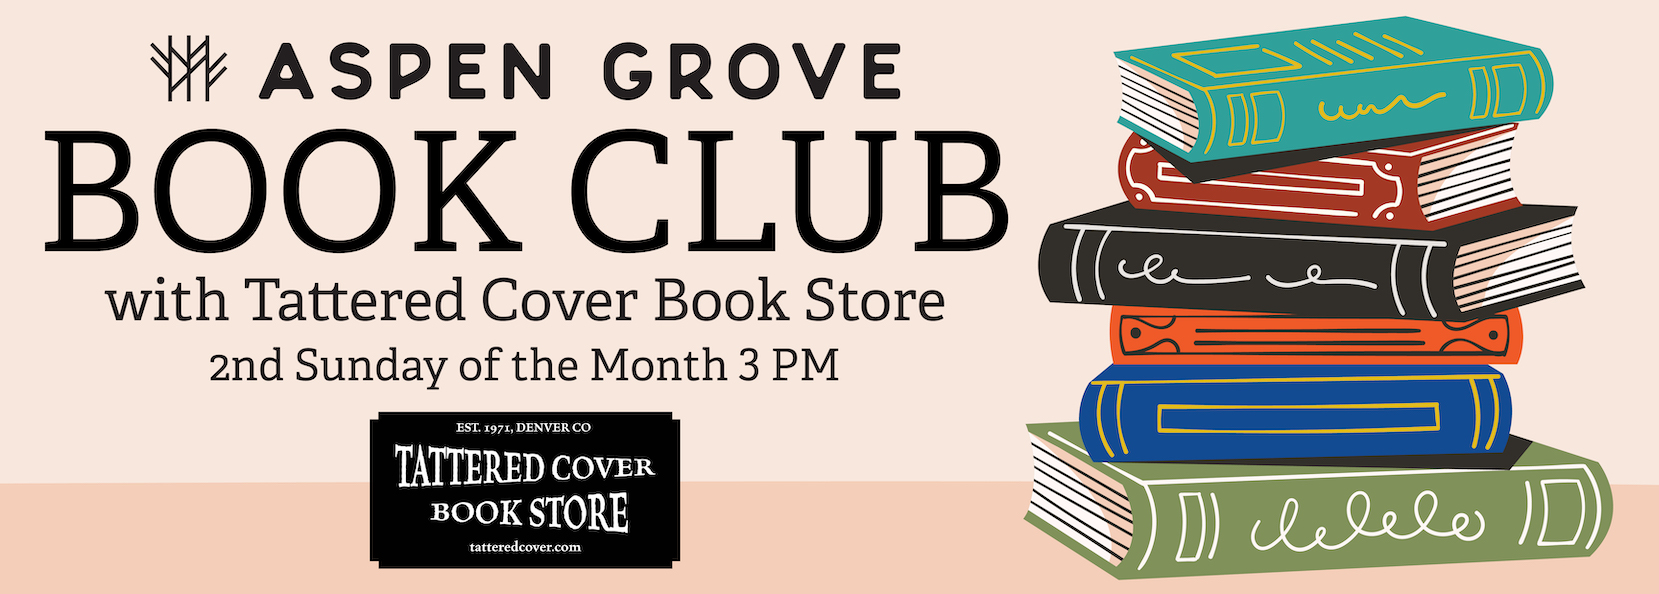 Aspen Grove Book Club MAY